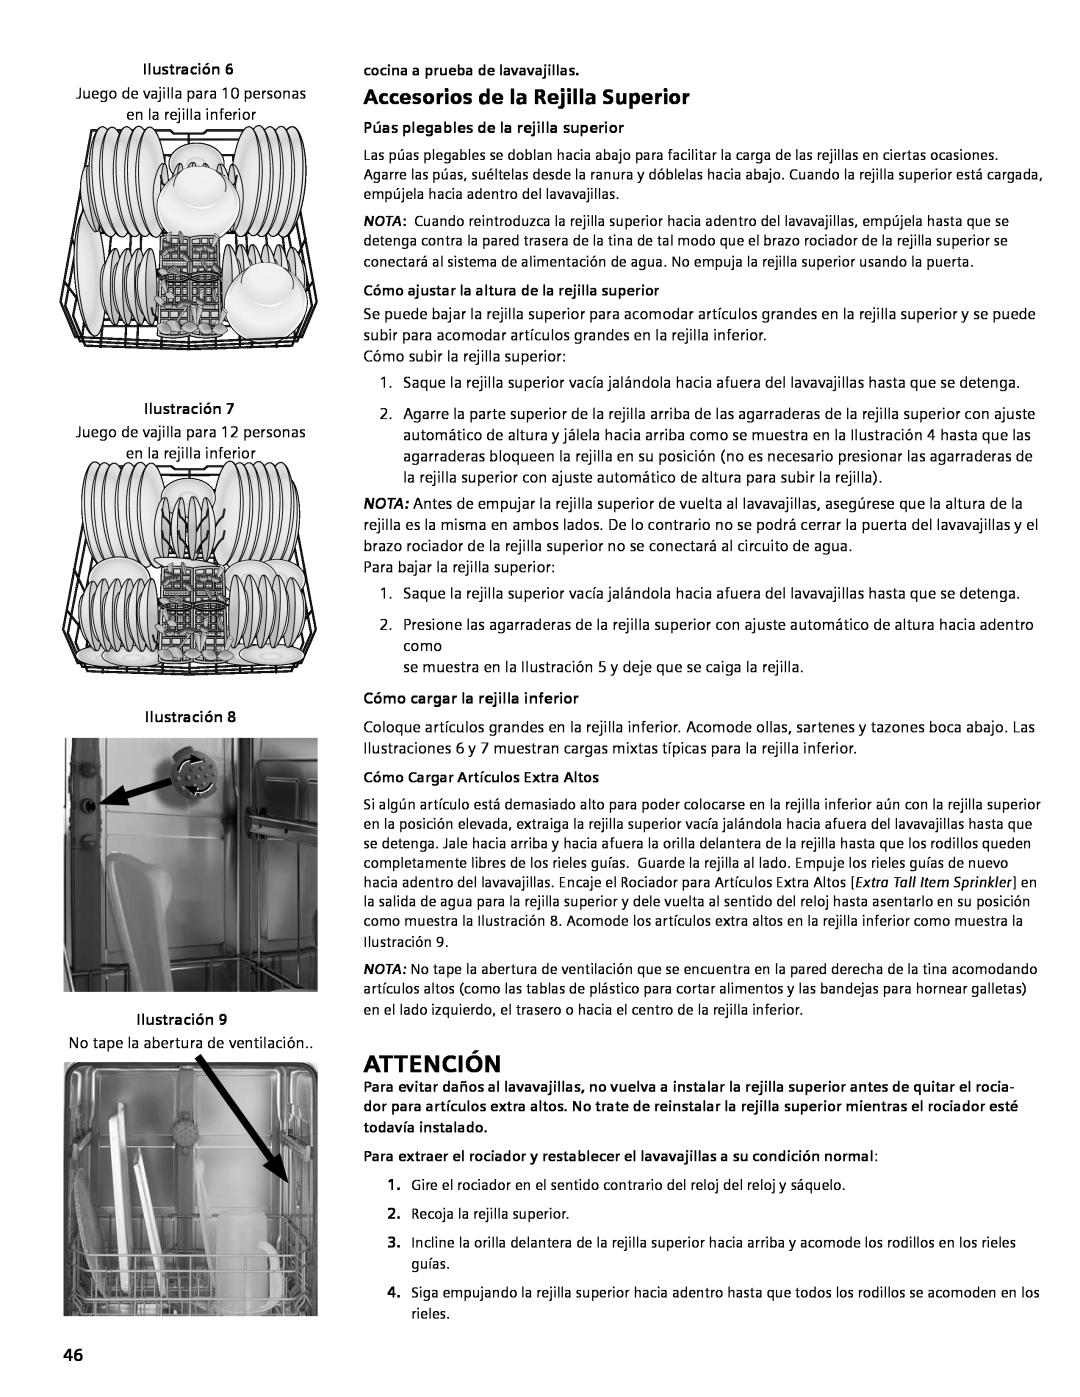 Bosch Appliances SGV45E03UC manual Attención, Accesorios de la Rejilla Superior, Ilustración Ilustración 